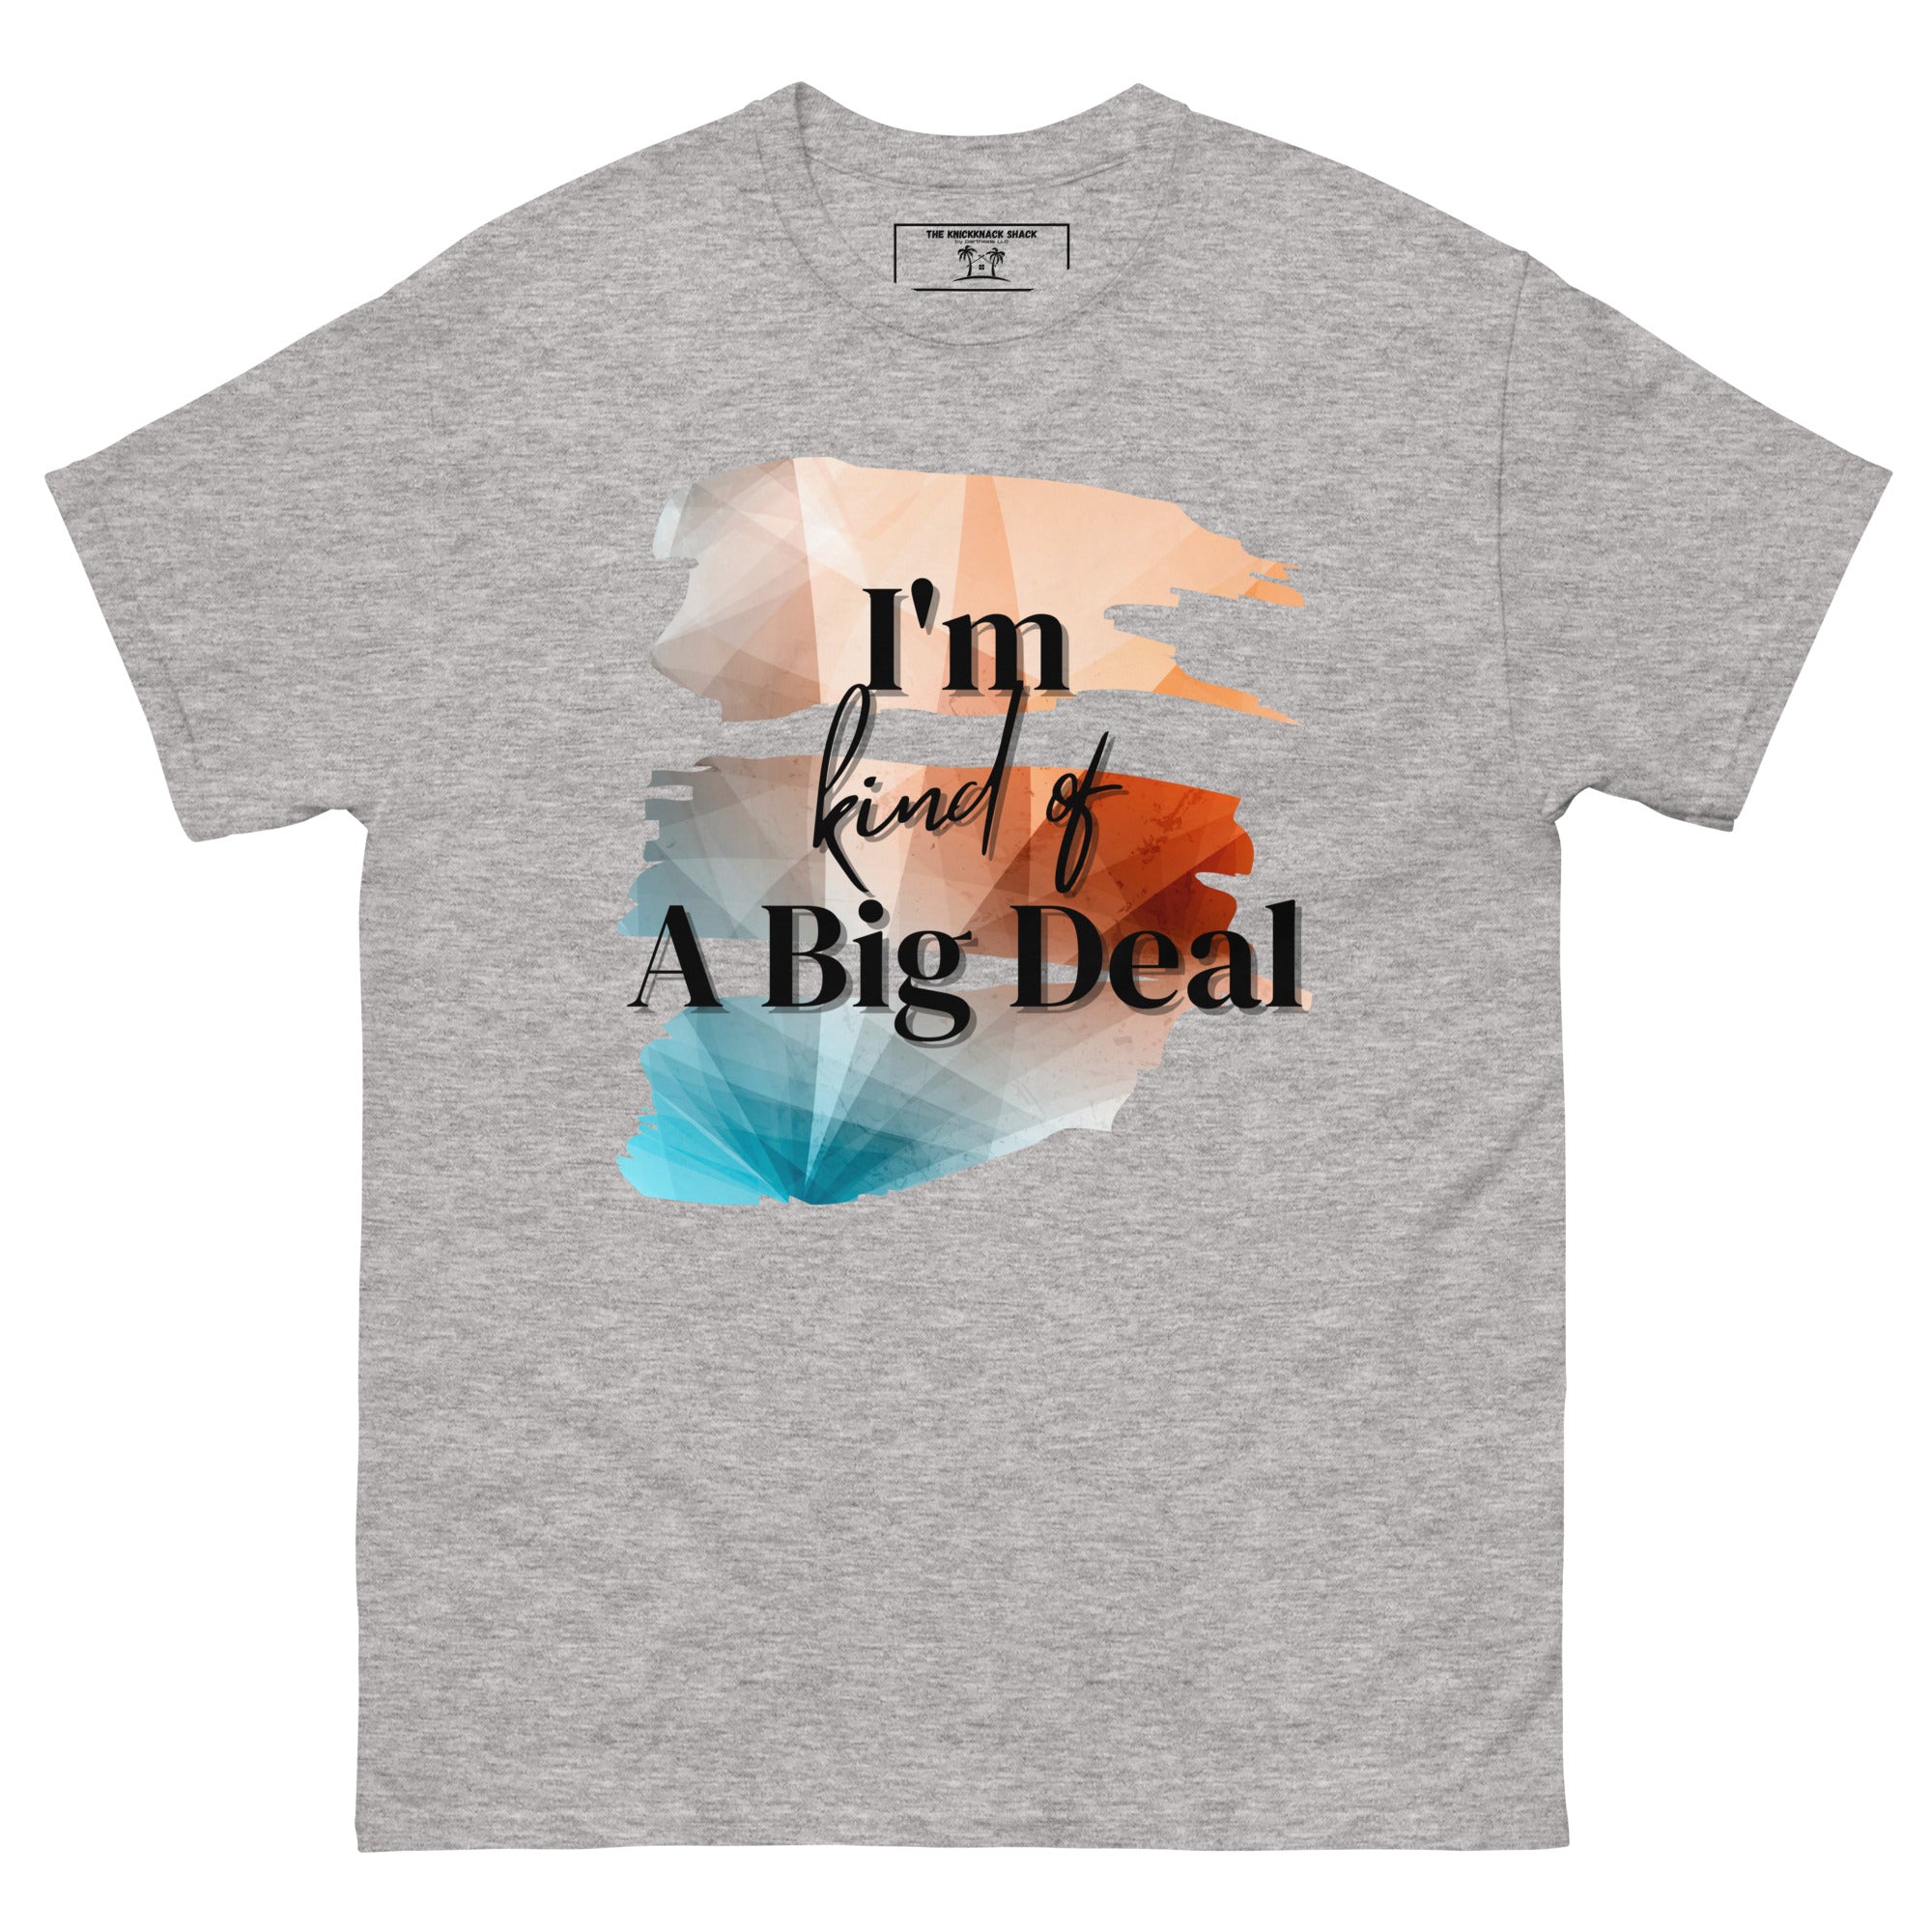 T-shirt classique - Big Deal (couleurs claires)